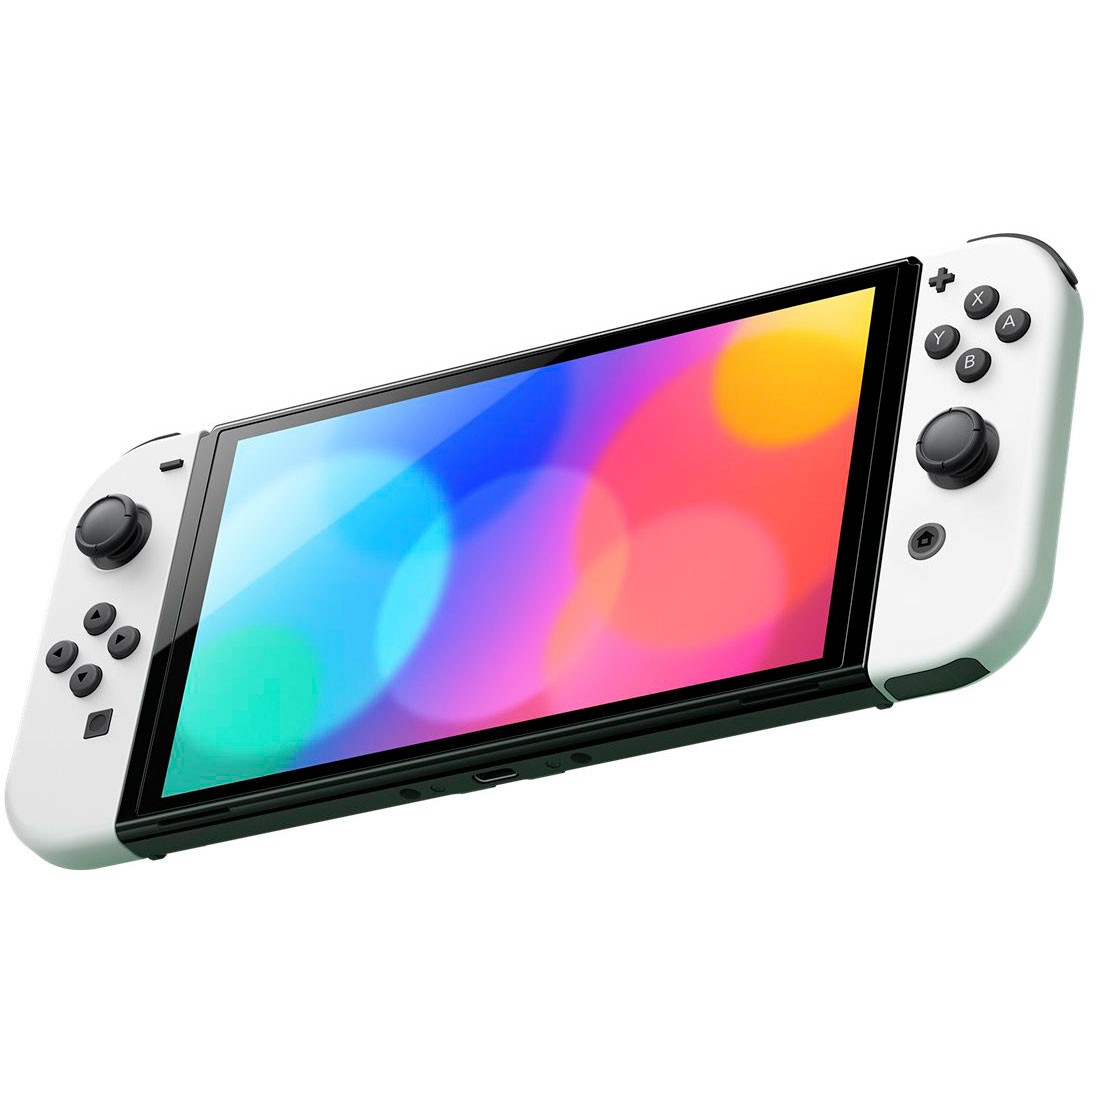 Nintendo Switch OLED - white/white